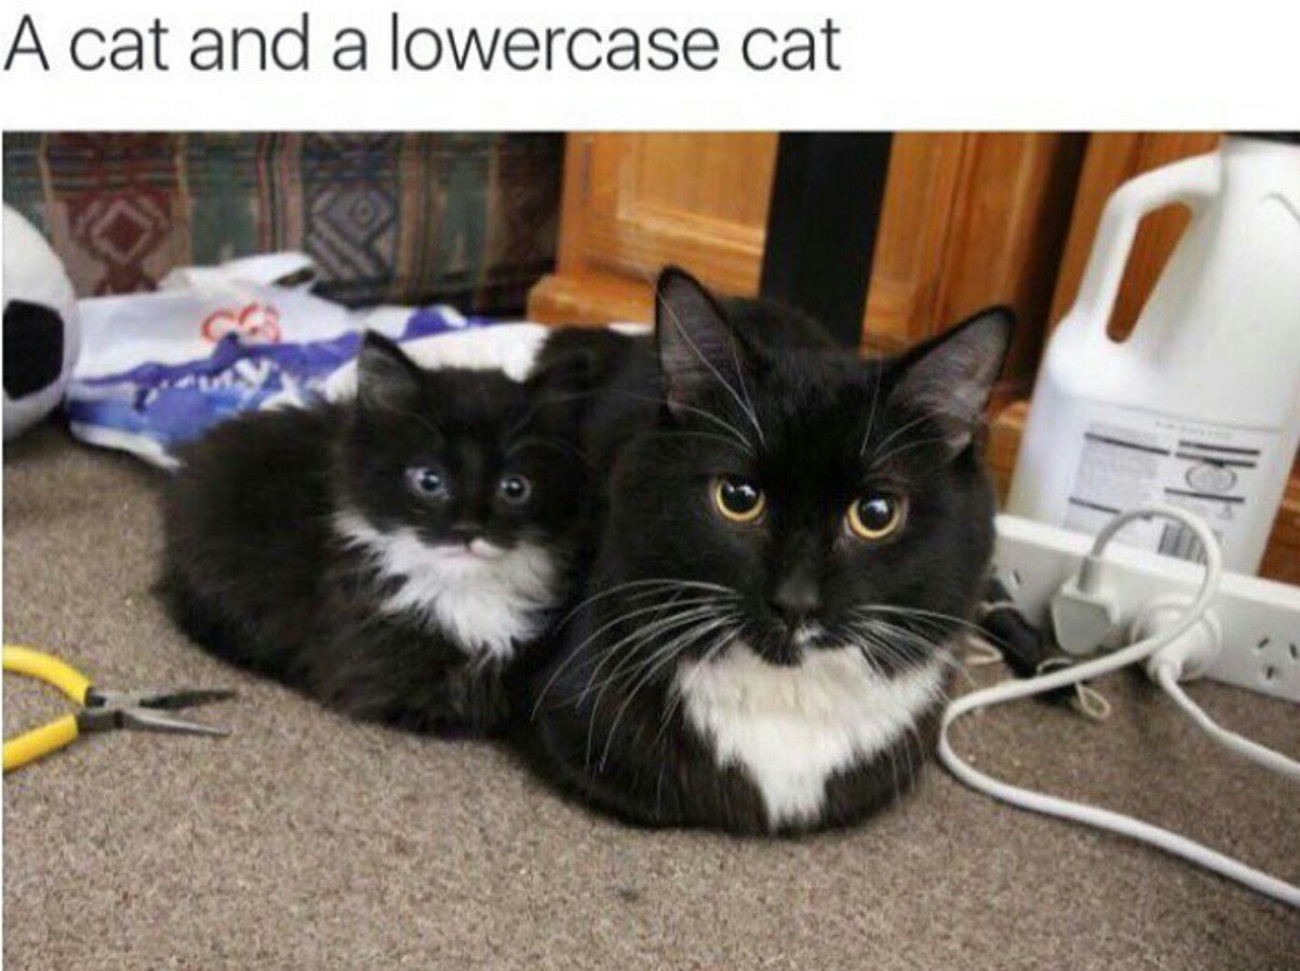 cat and a lowercase cat - A cat and a lowercase cat